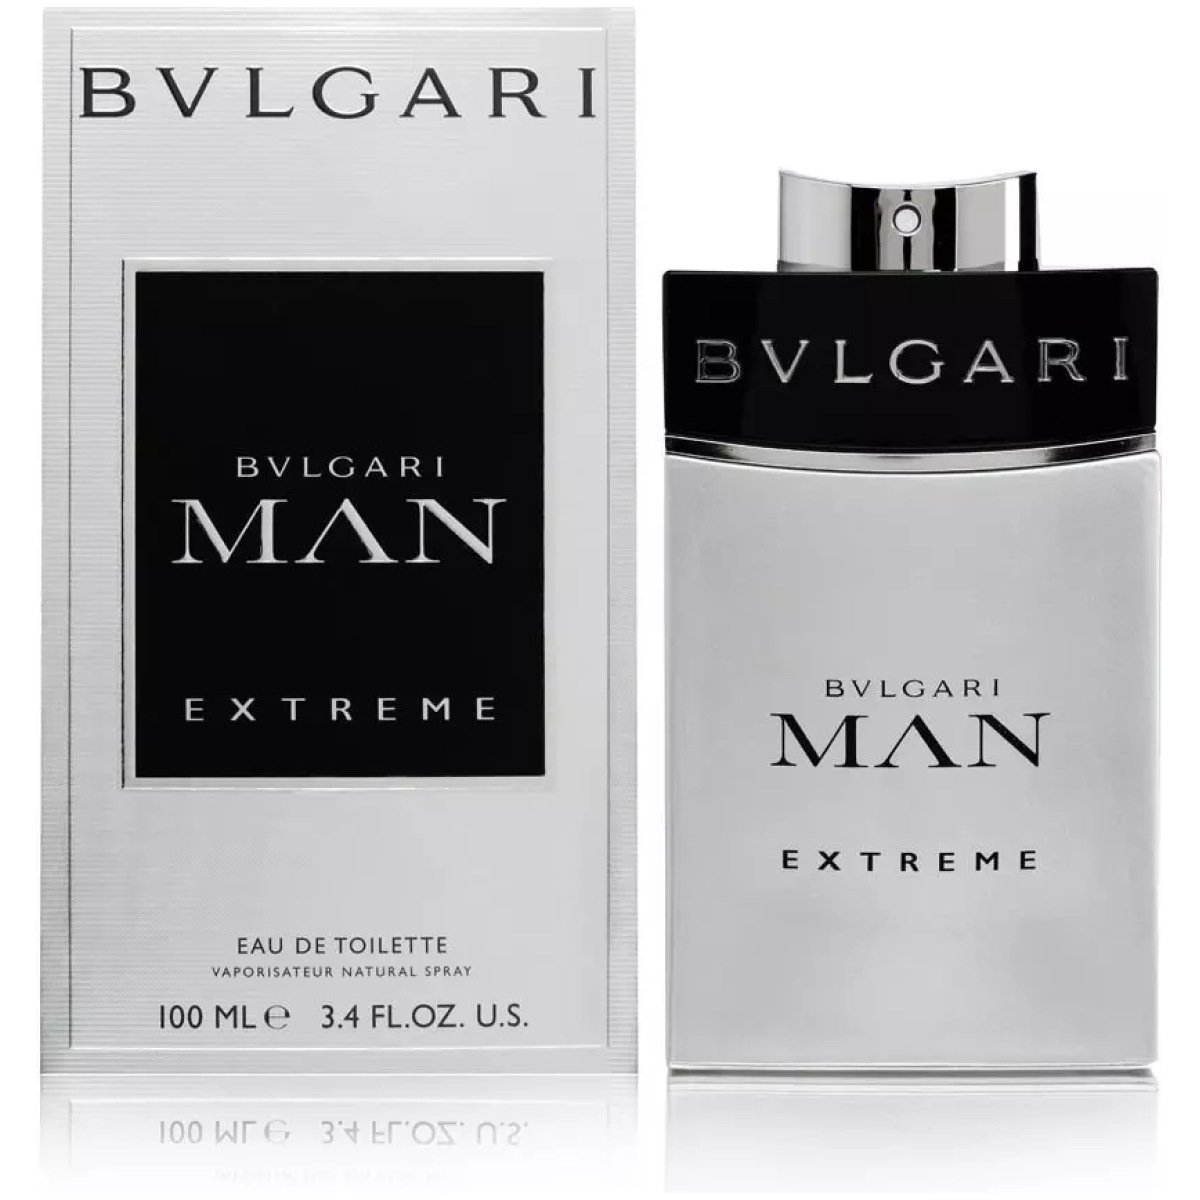 Bvlgari Man Extreme EDT Perfume For Men 100ml